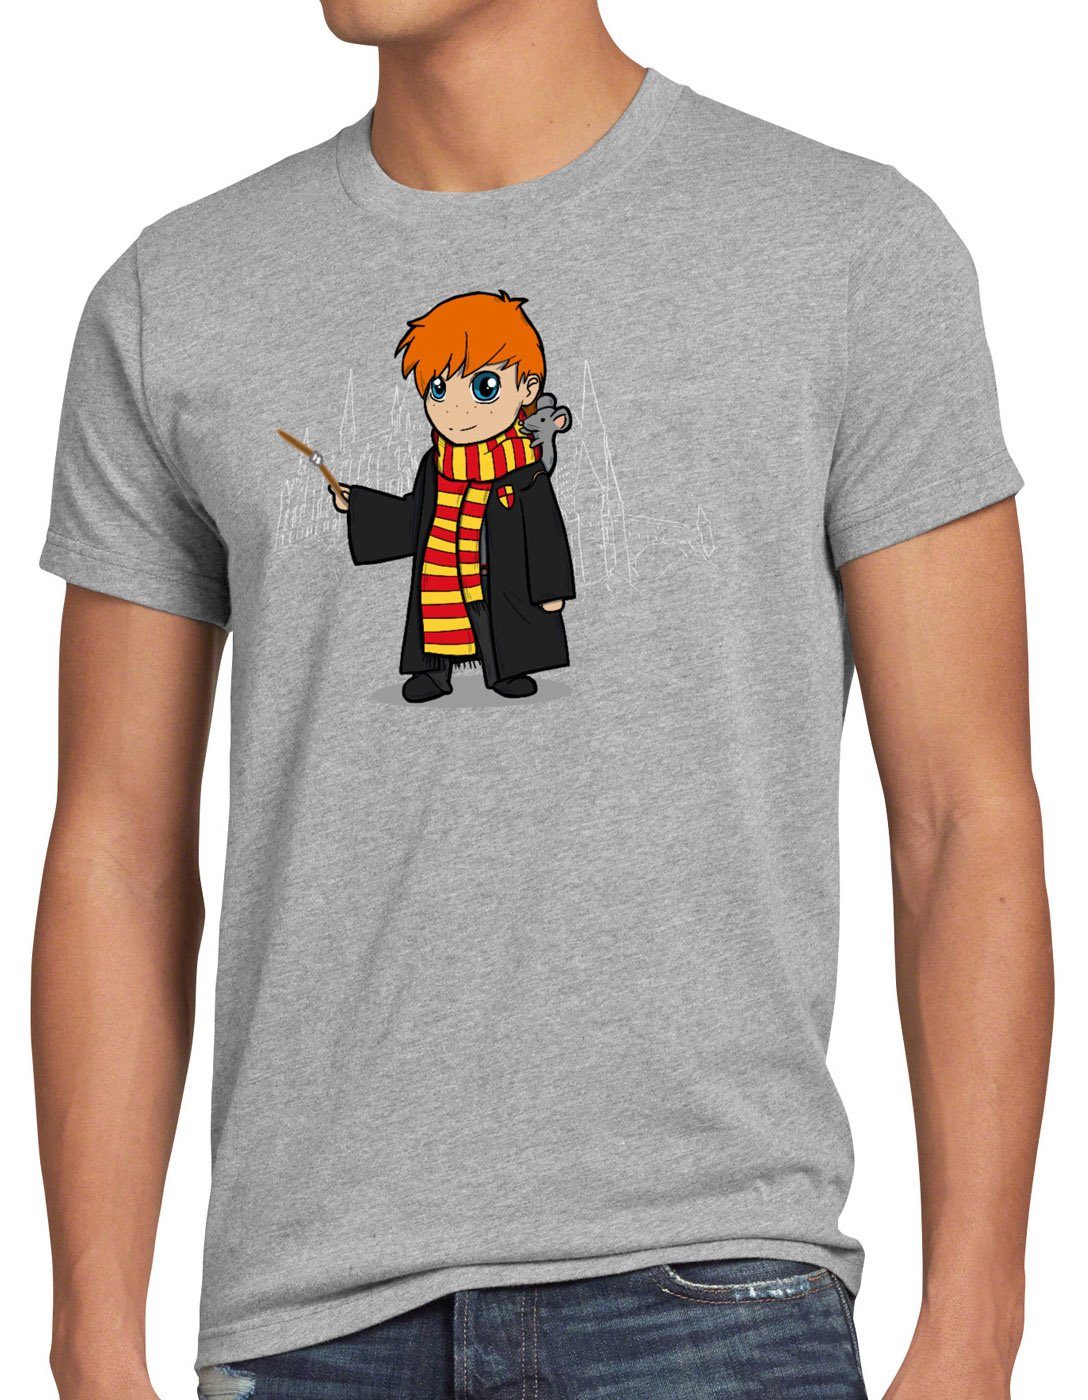 Ron manga T-Shirt meliert Print-Shirt zauberei grau anime style3 Chibi Herren